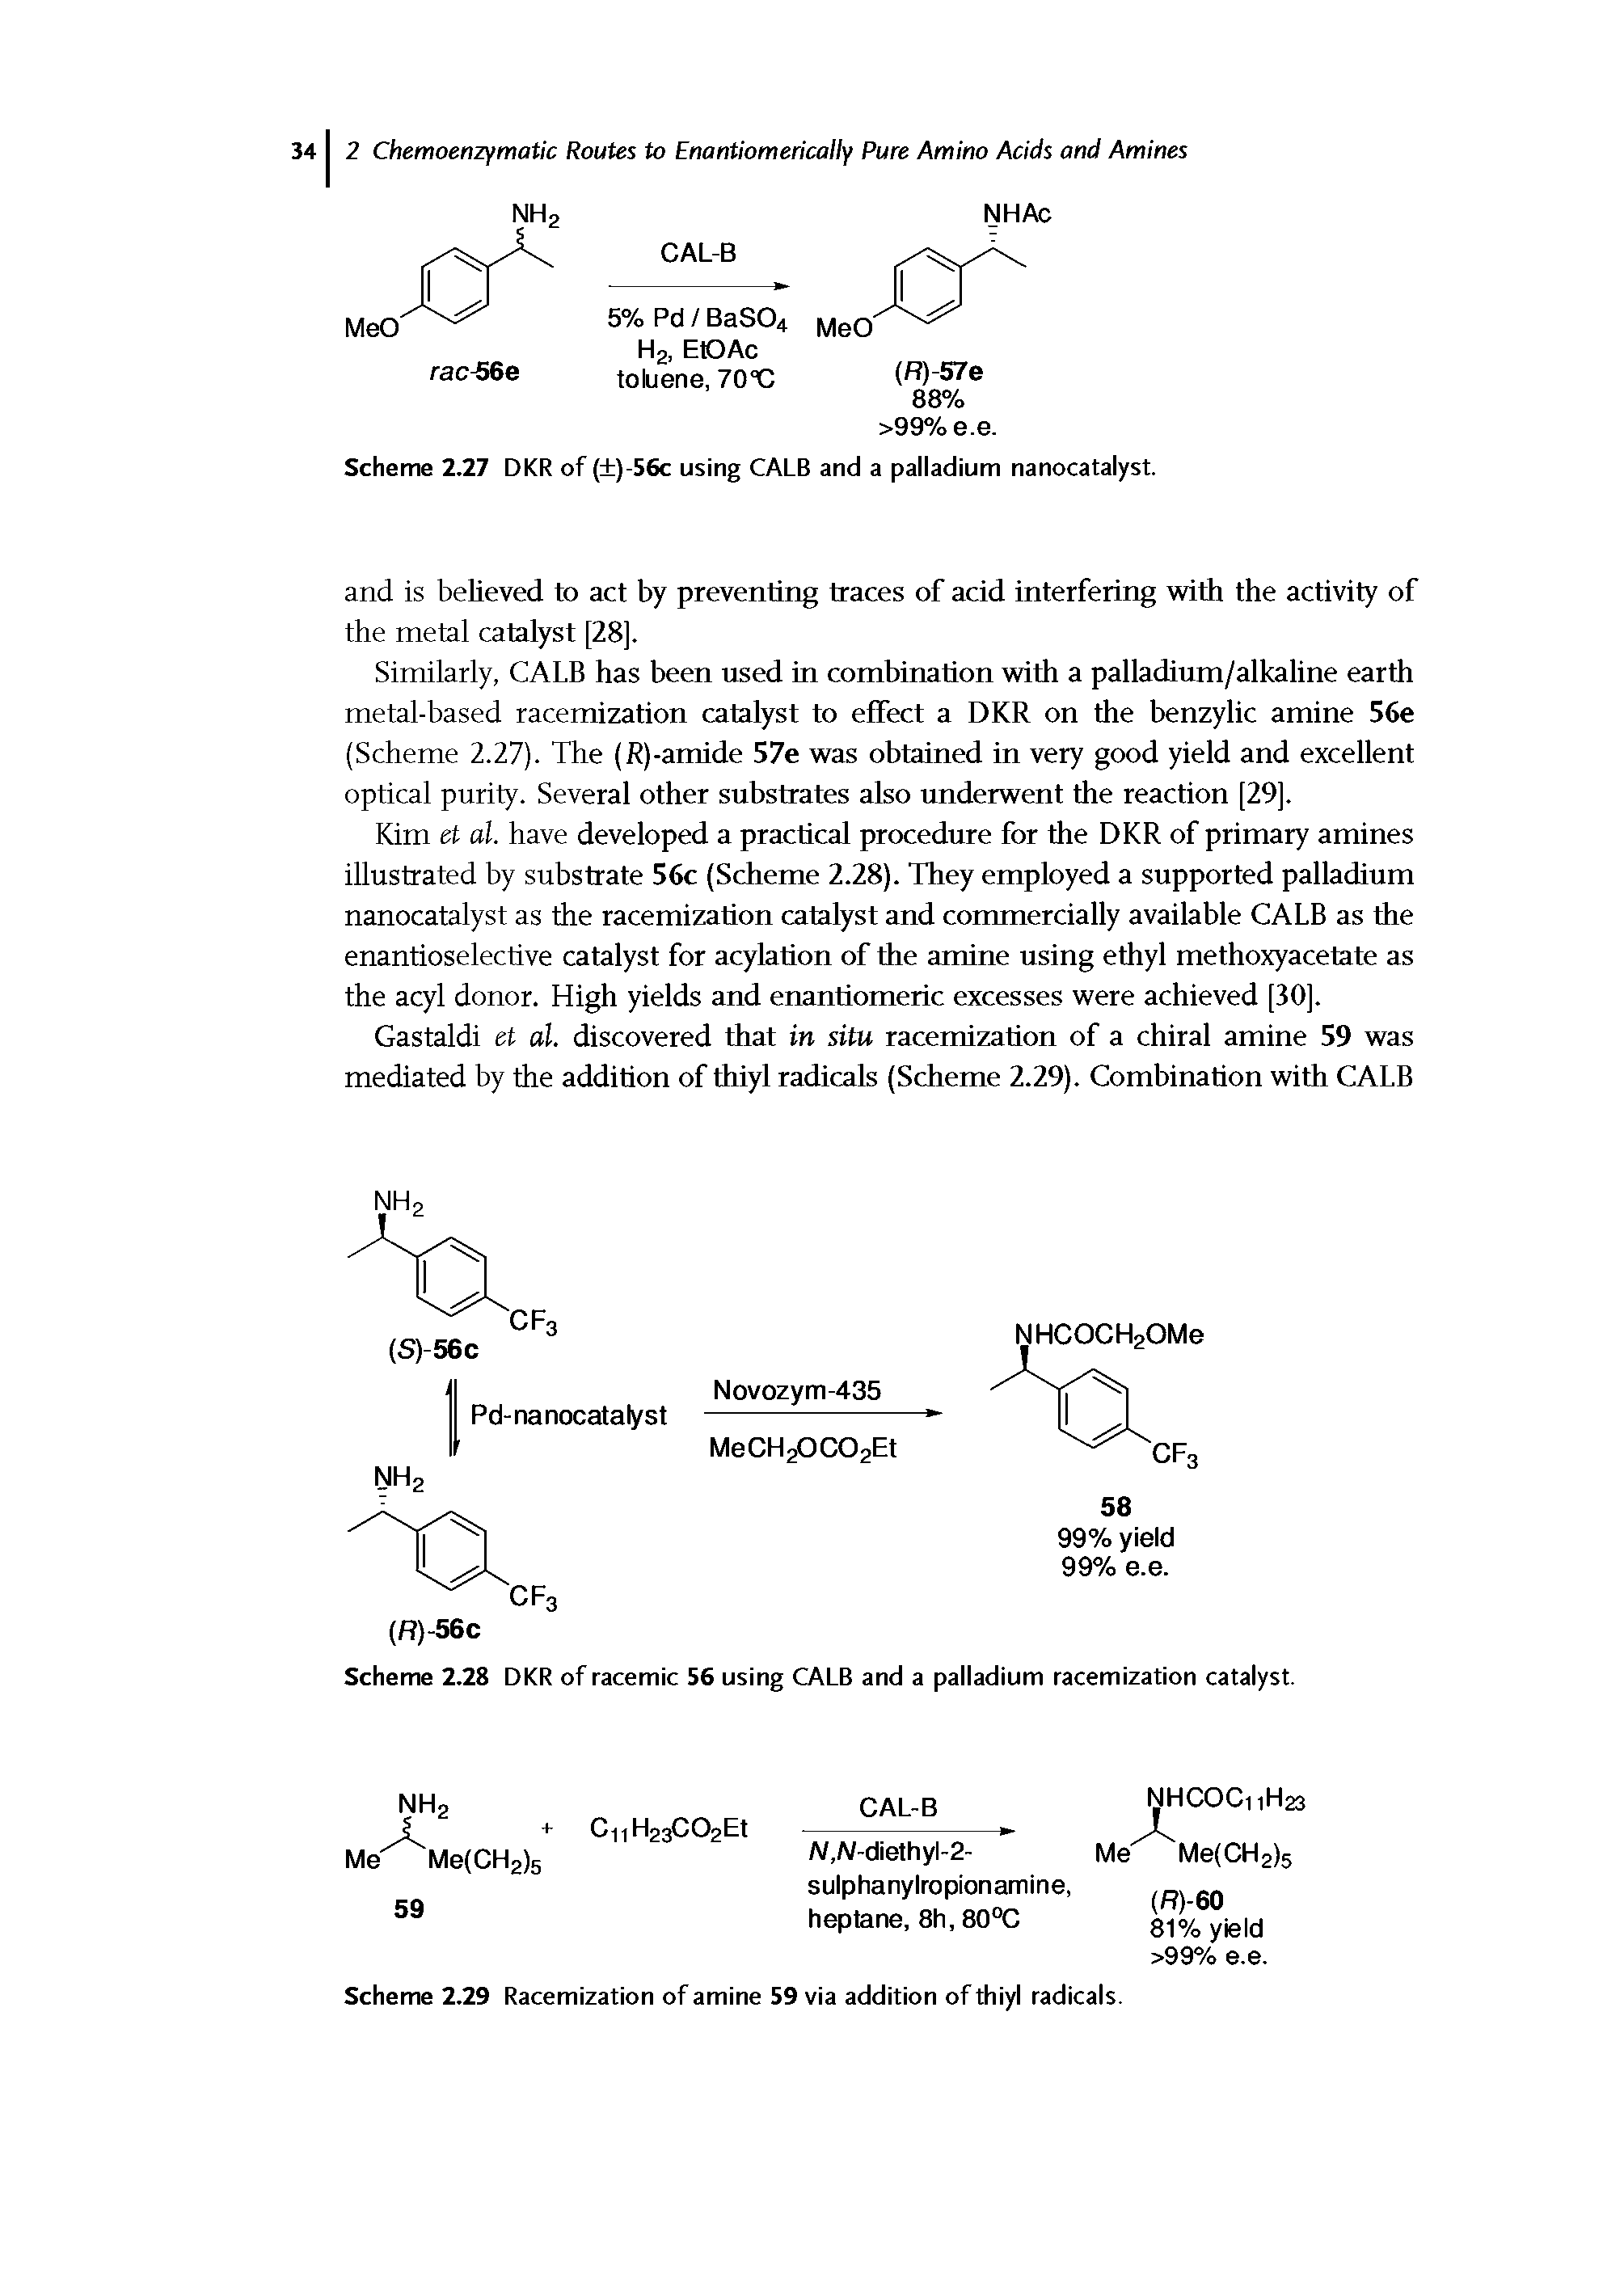 Scheme 2.29 Racemization of amine 59 via addition of thiyl radicals.